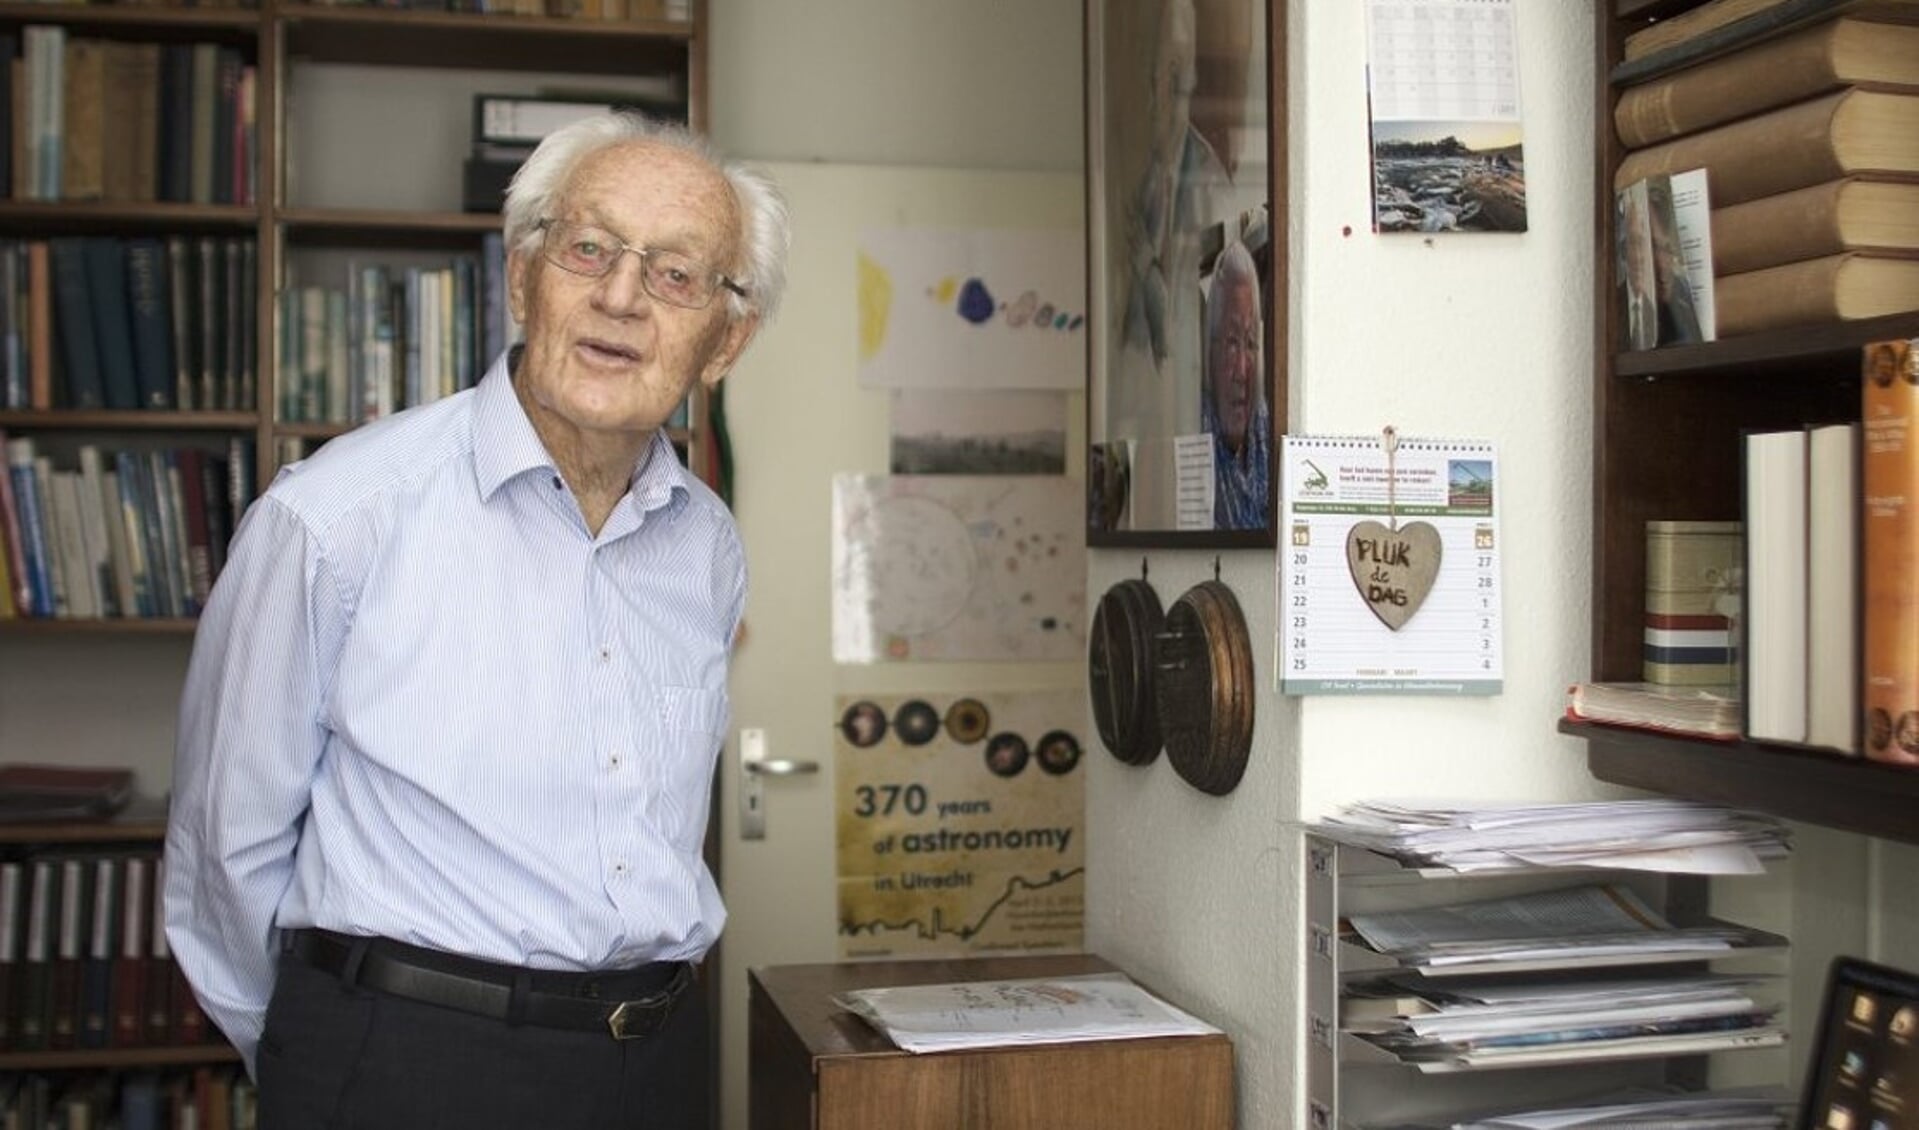 De wereldberoemde sterrenkundige professor doctor Kees de Jager wordt vandaag 100 jaar.